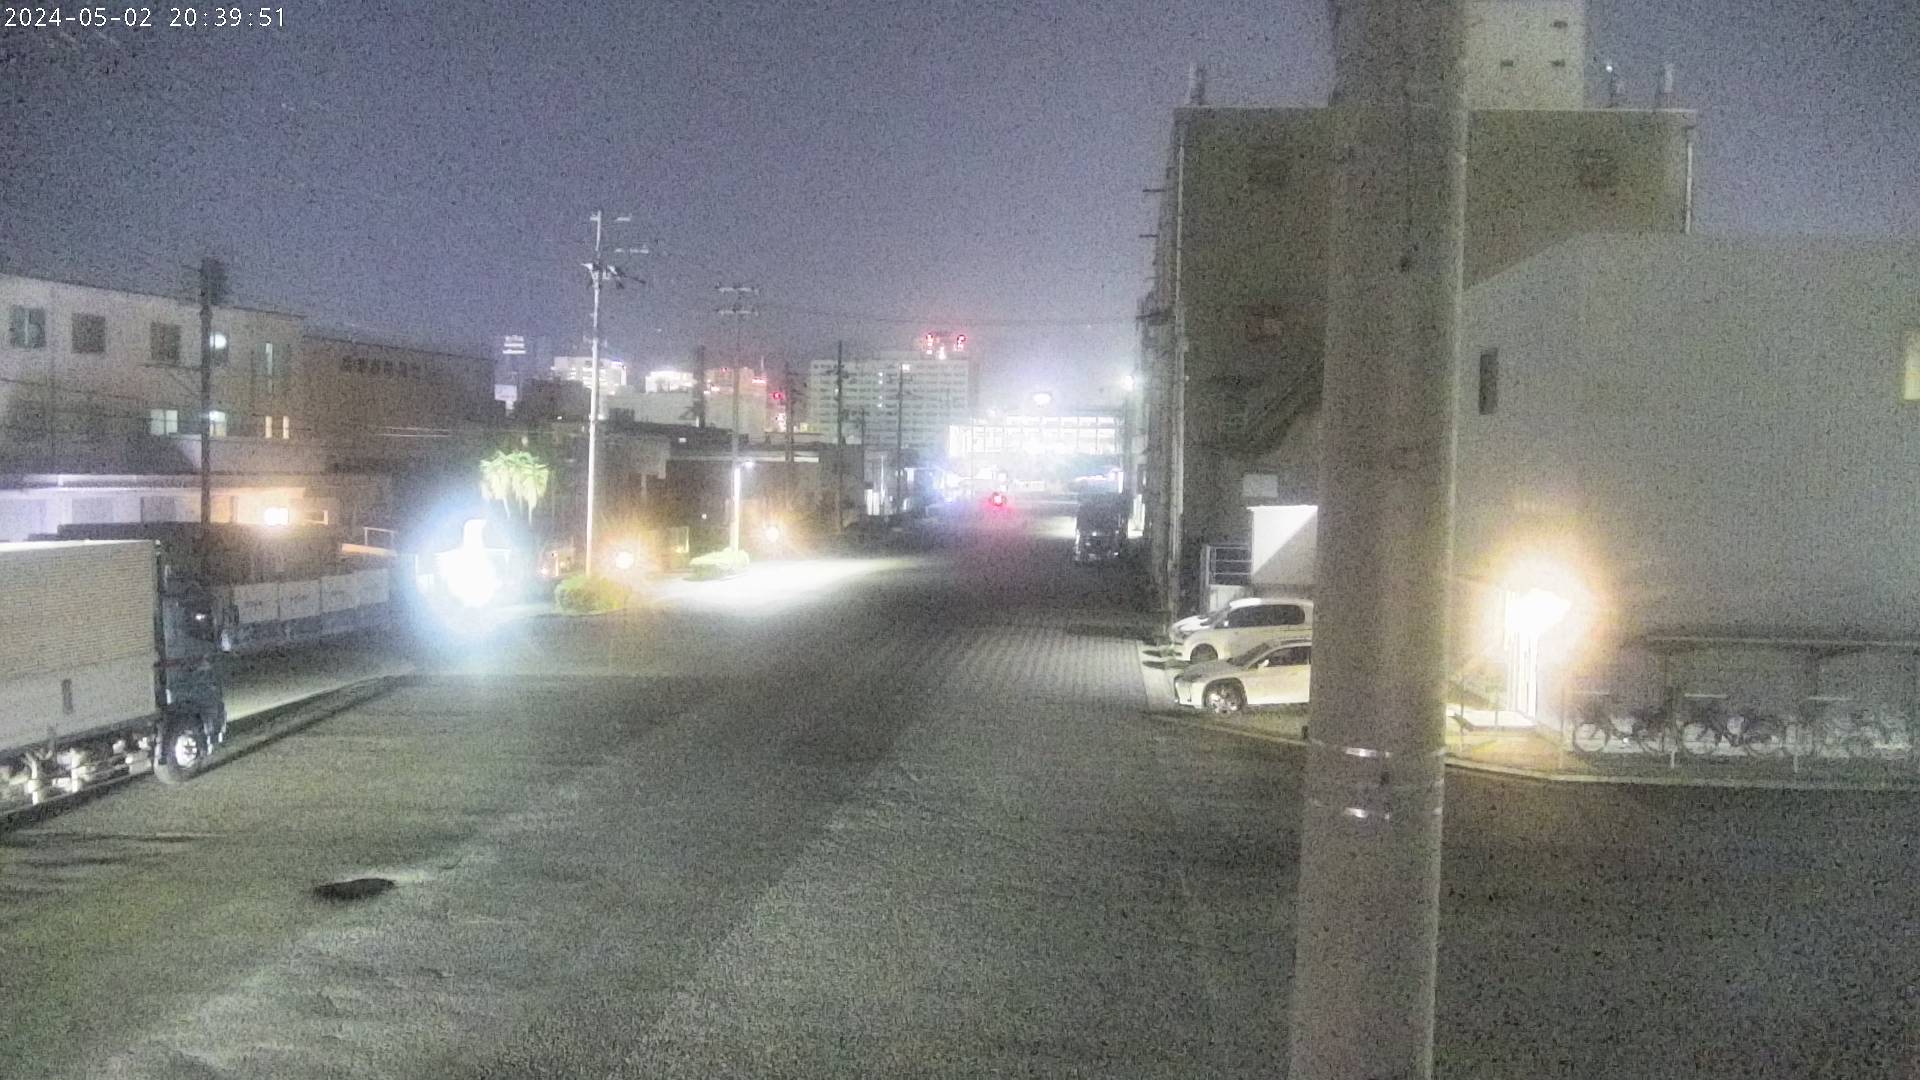 兵庫県の一般道ライブカメラ｢兵庫突堤･兵庫埠頭２｣のライブ画像